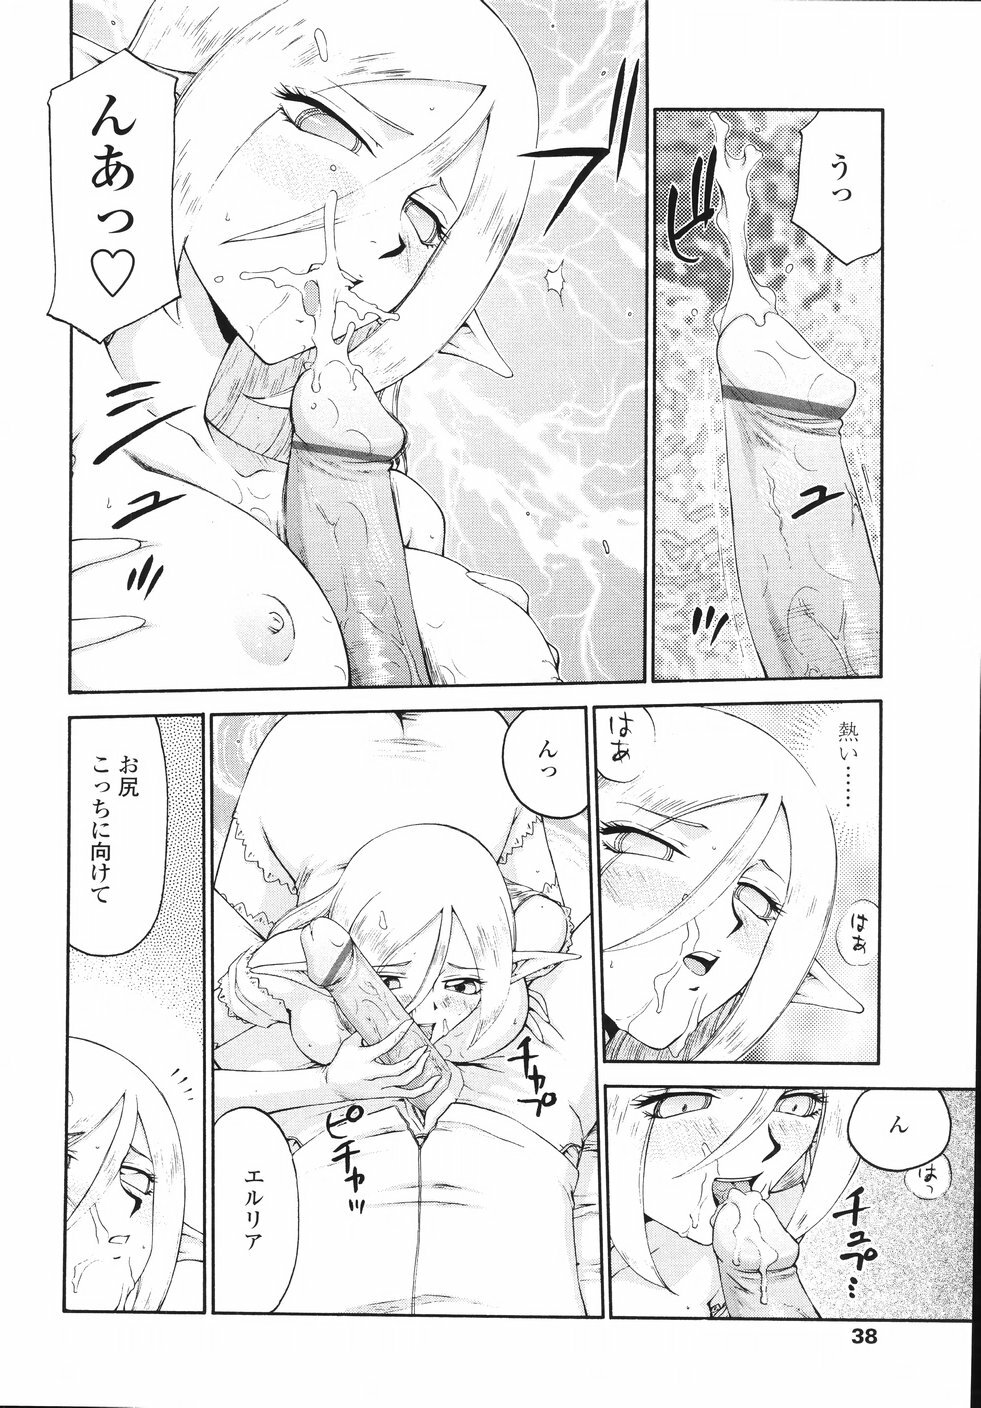 [Taira Hajime] Eruria page 41 full